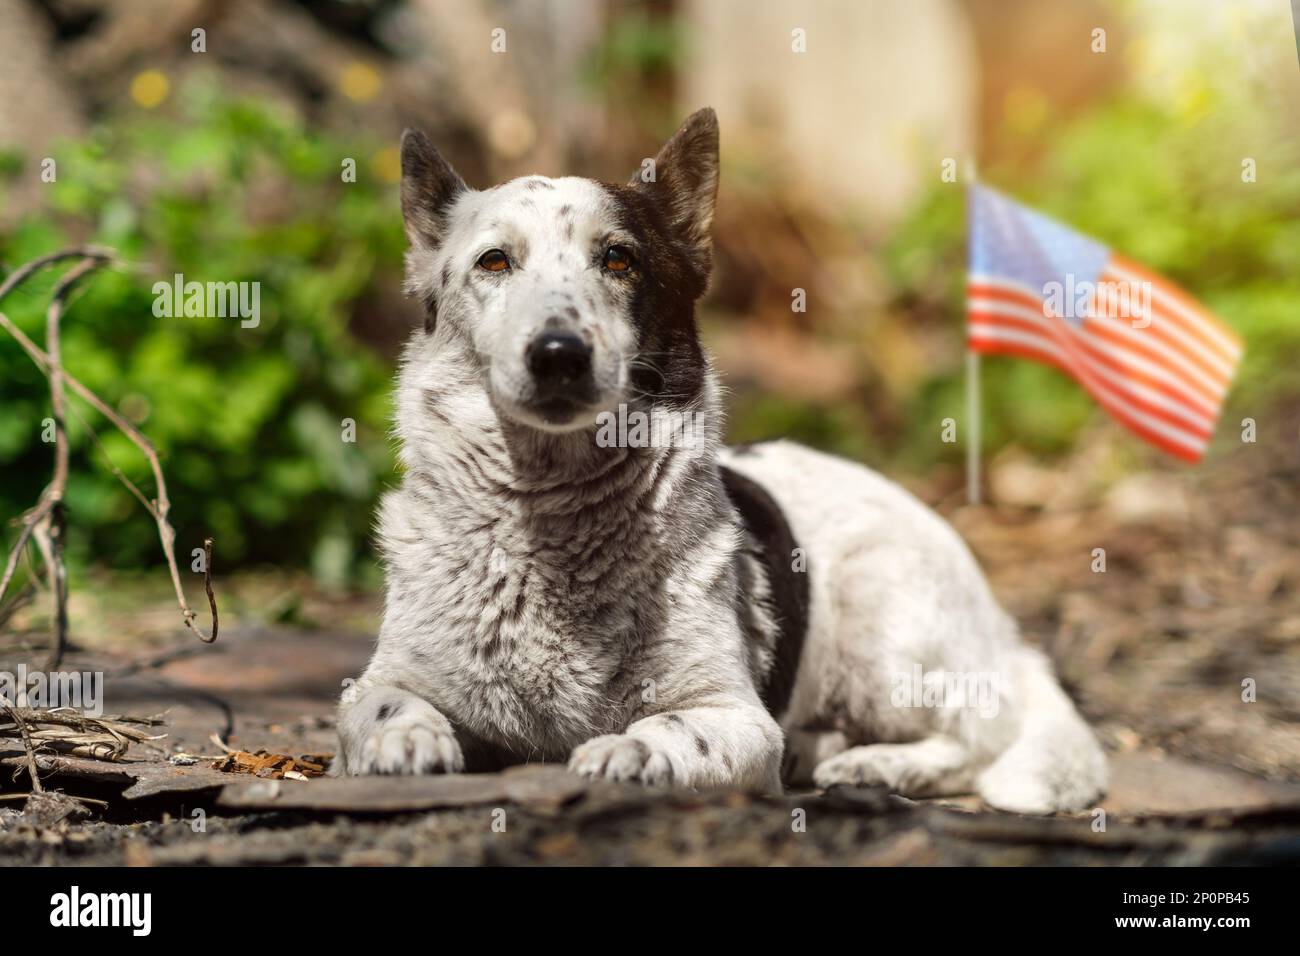 Le portrait d'un adorable chien noir et blanc mélangé est couché dans le jardin sous le soleil. Drapeau américain en arrière-plan. Banque D'Images